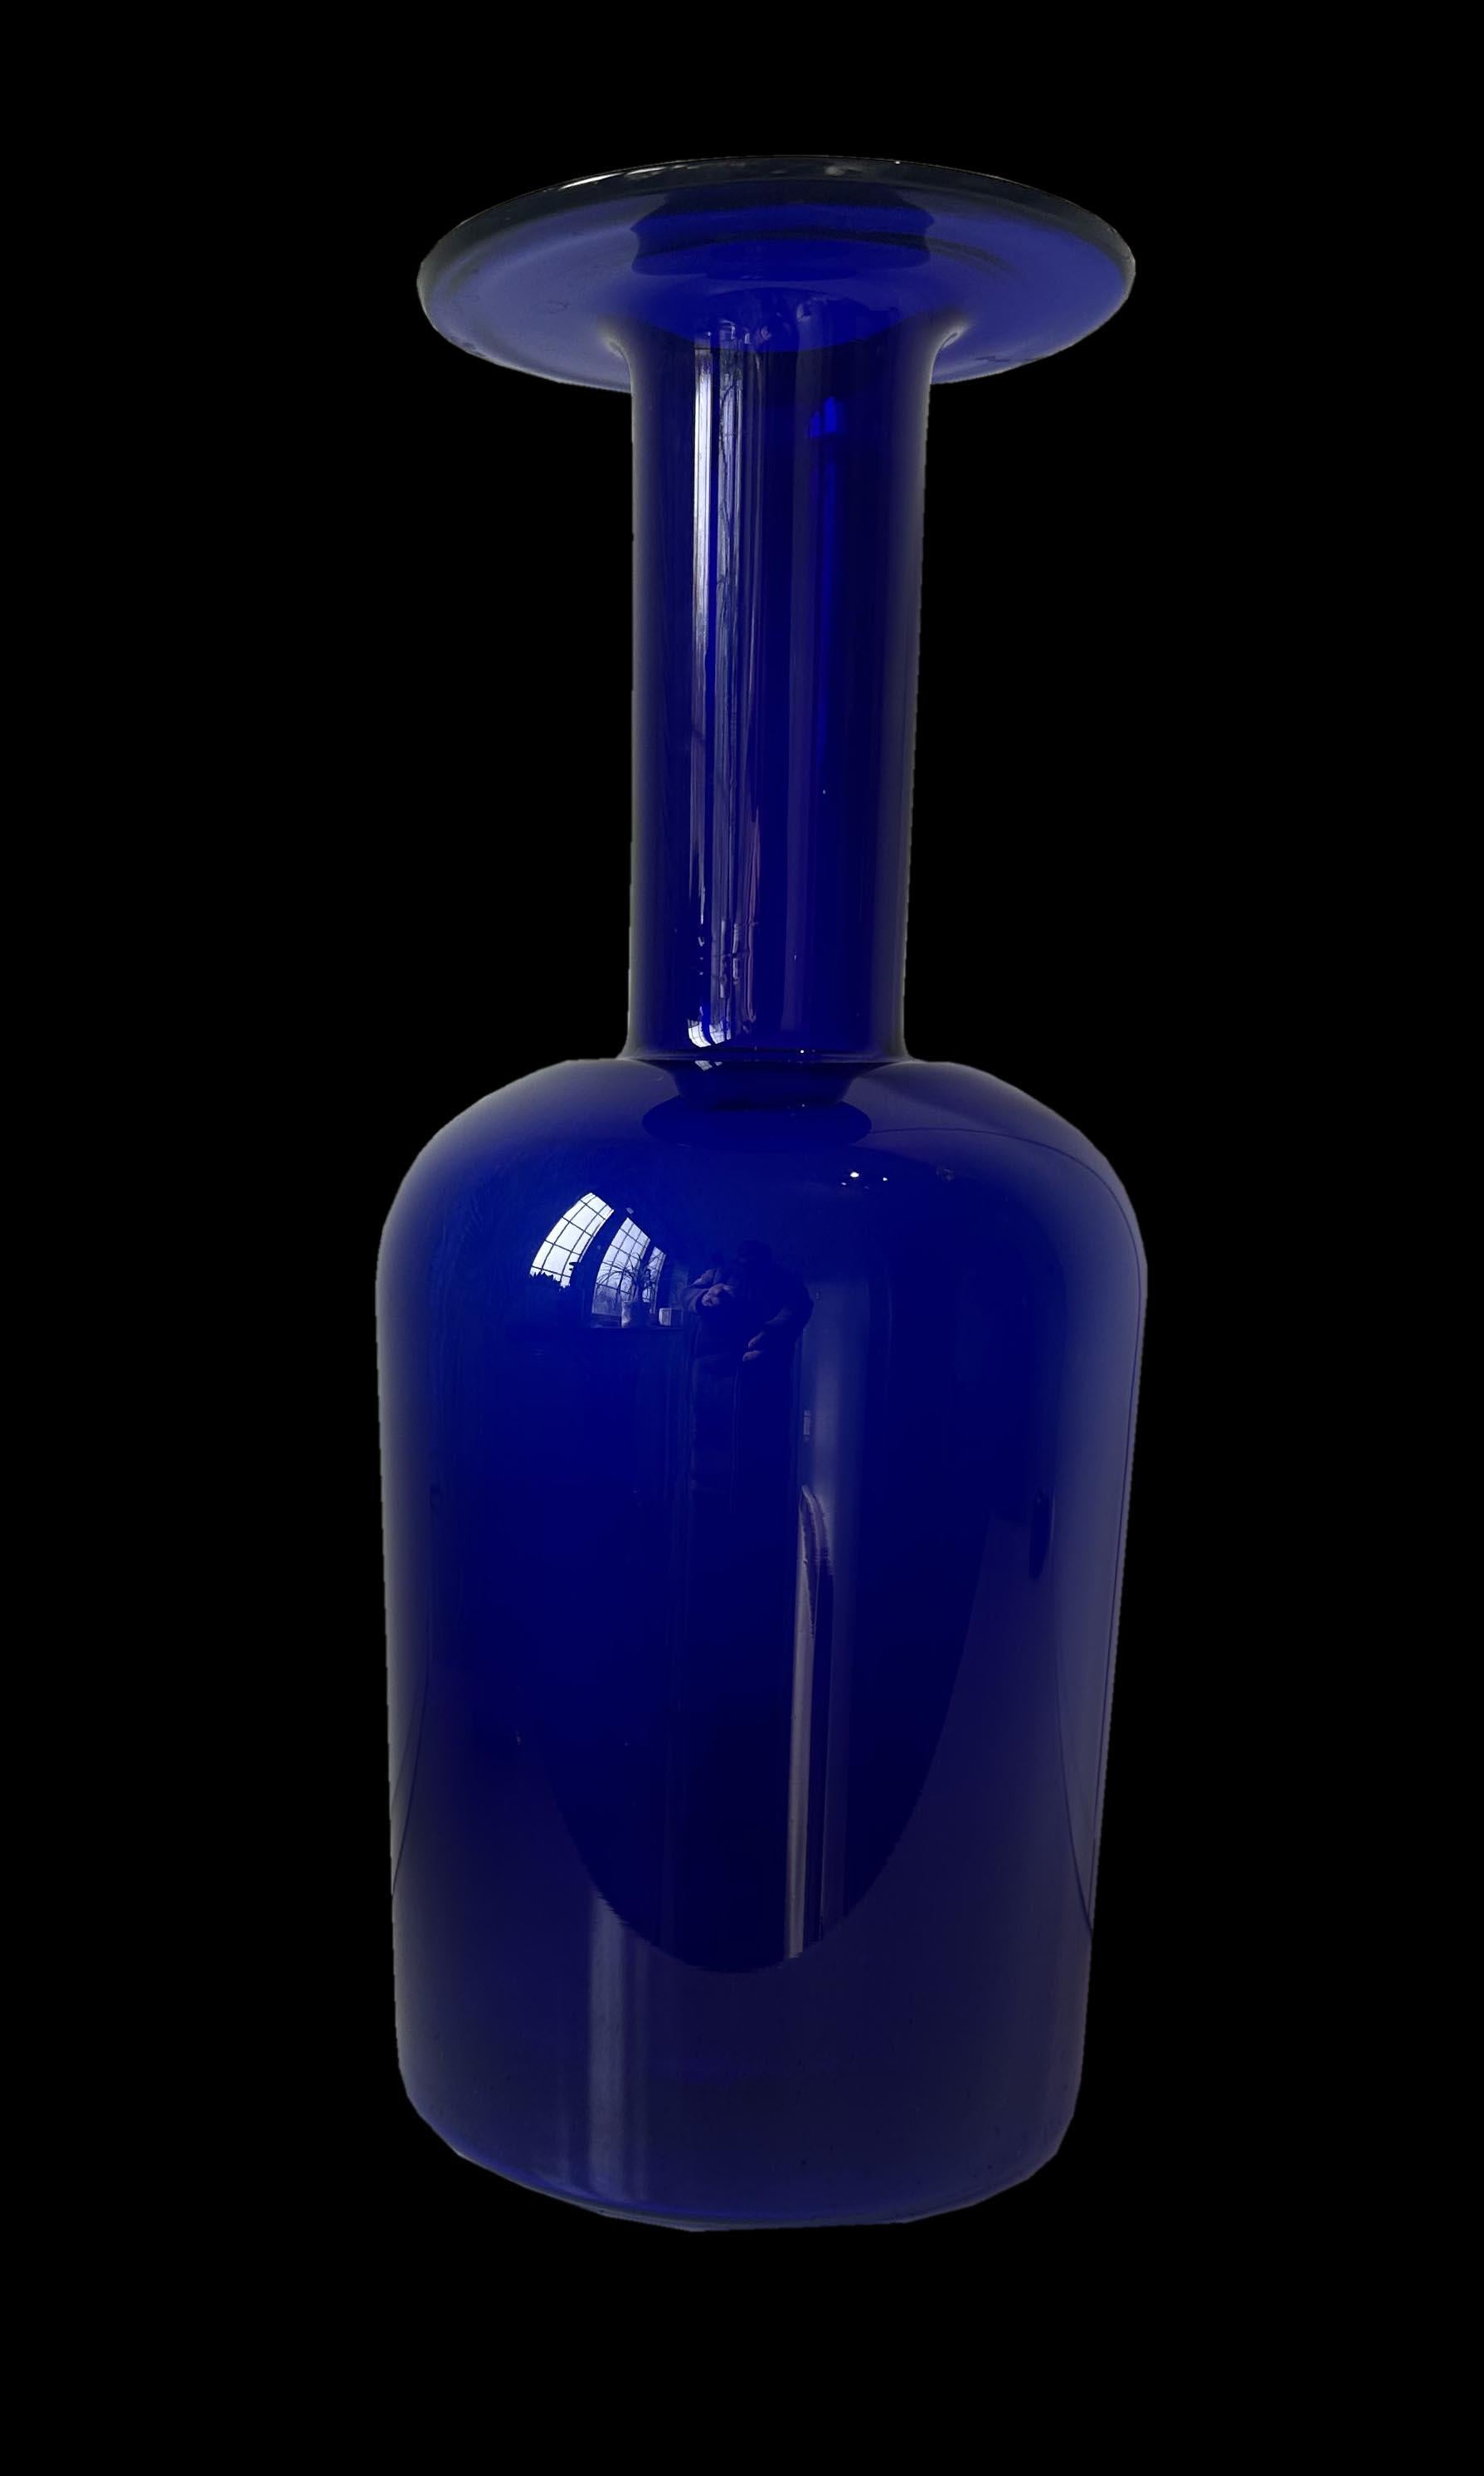 Il s'agit d'une très belle version bleu cobalt du Gulvase super cool et élégant du designer Otto Brauer pour Holmegaard, Danemark.